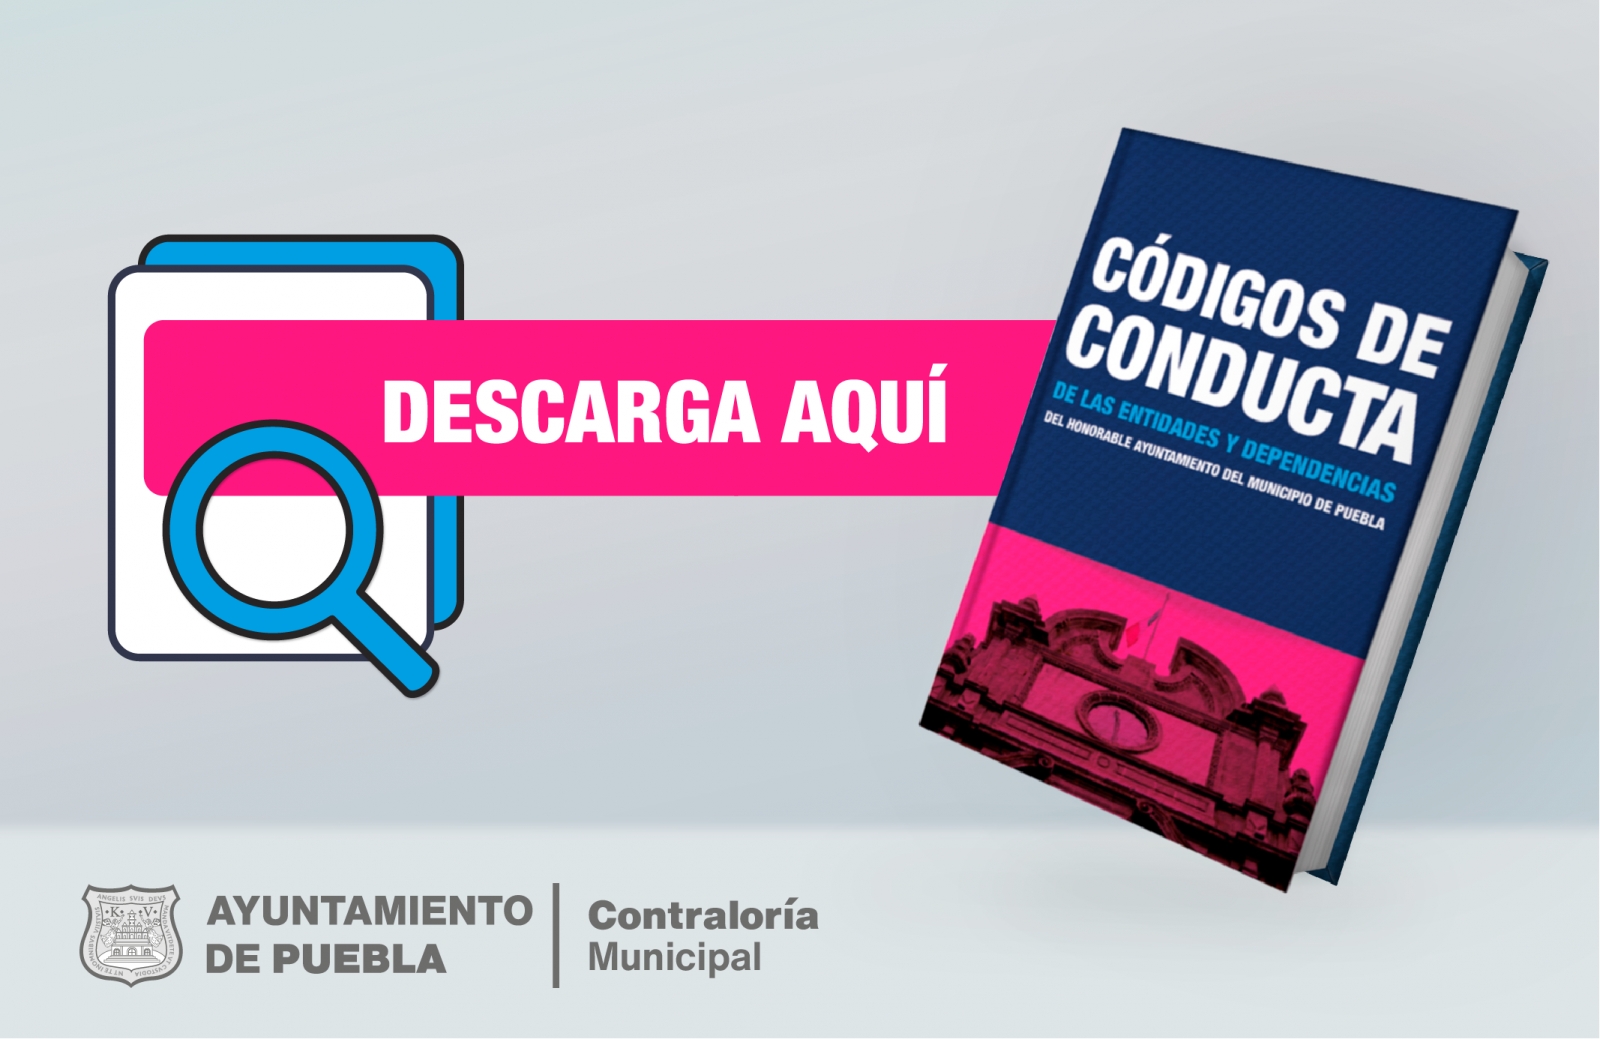 Códigos de Conducta del H. Ayuntamiento de Puebla